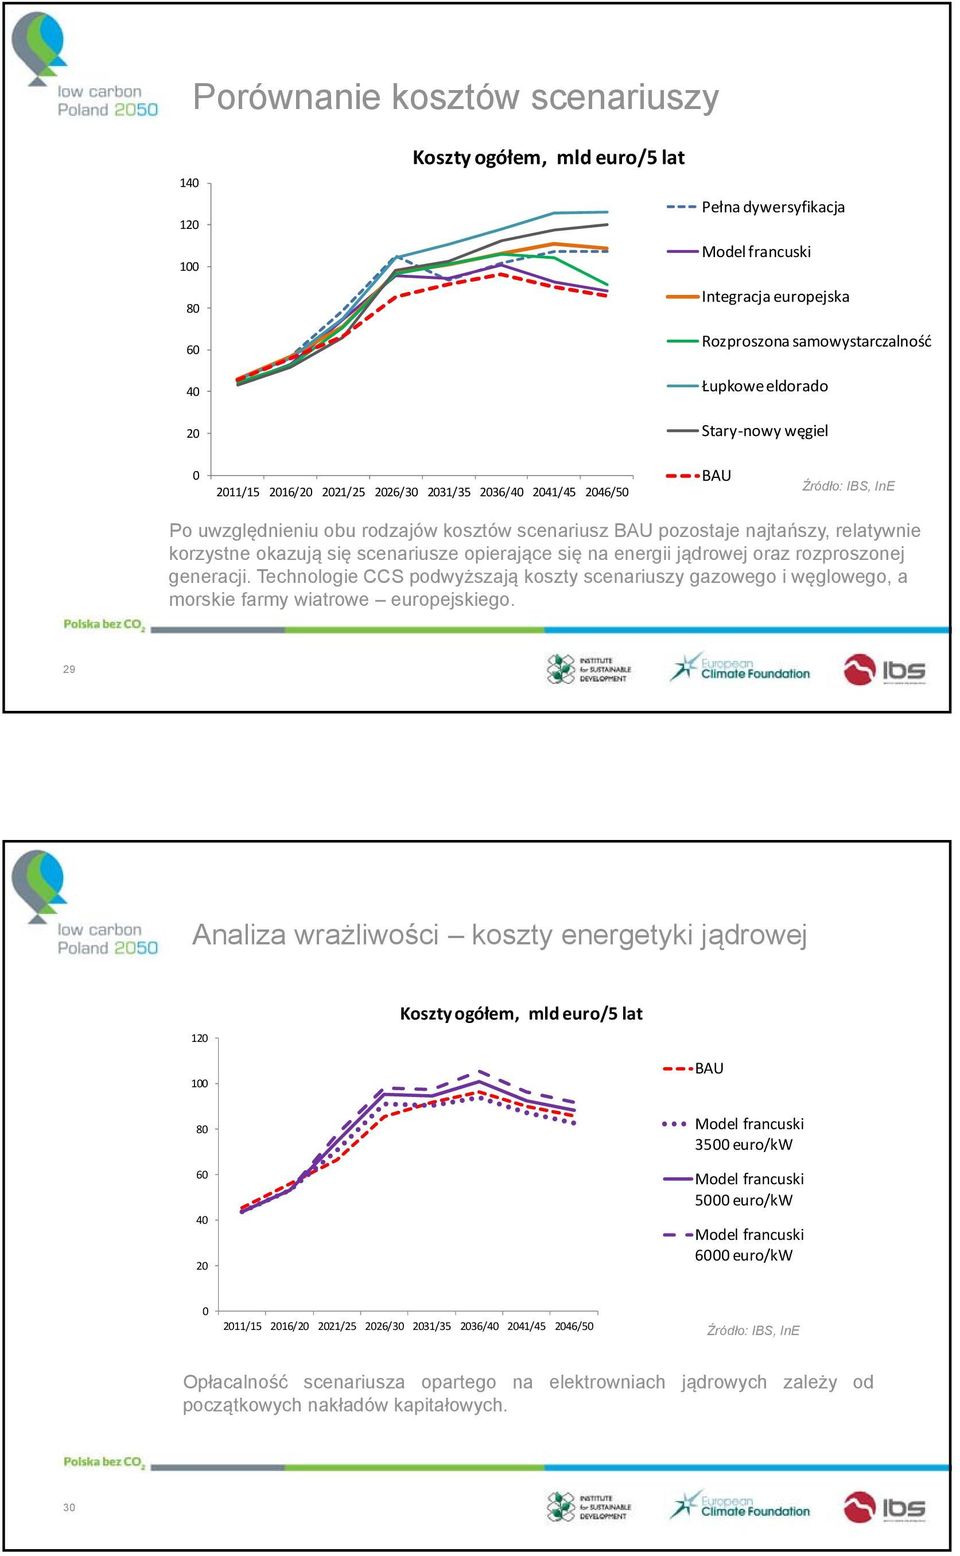 energii jądrowej oraz rozproszonej generacji. Technologie CCS podwyższają koszty scenariuszy gazowego i węglowego, a morskie farmy wiatrowe europejskiego.